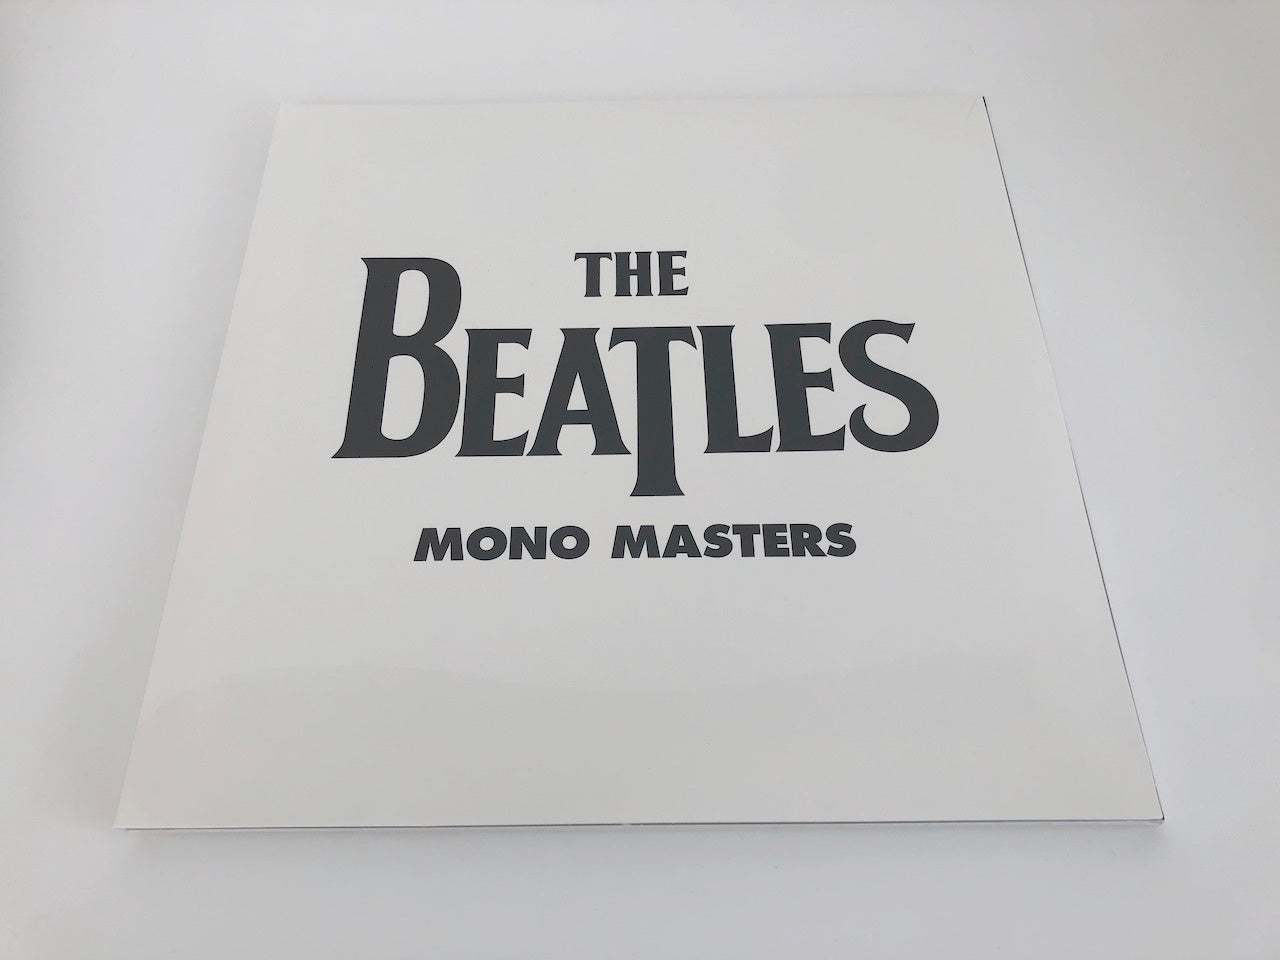 盤未使用】LP/ THE BEATLES IN MONO BOX / EU盤 14枚組 ブックレット 